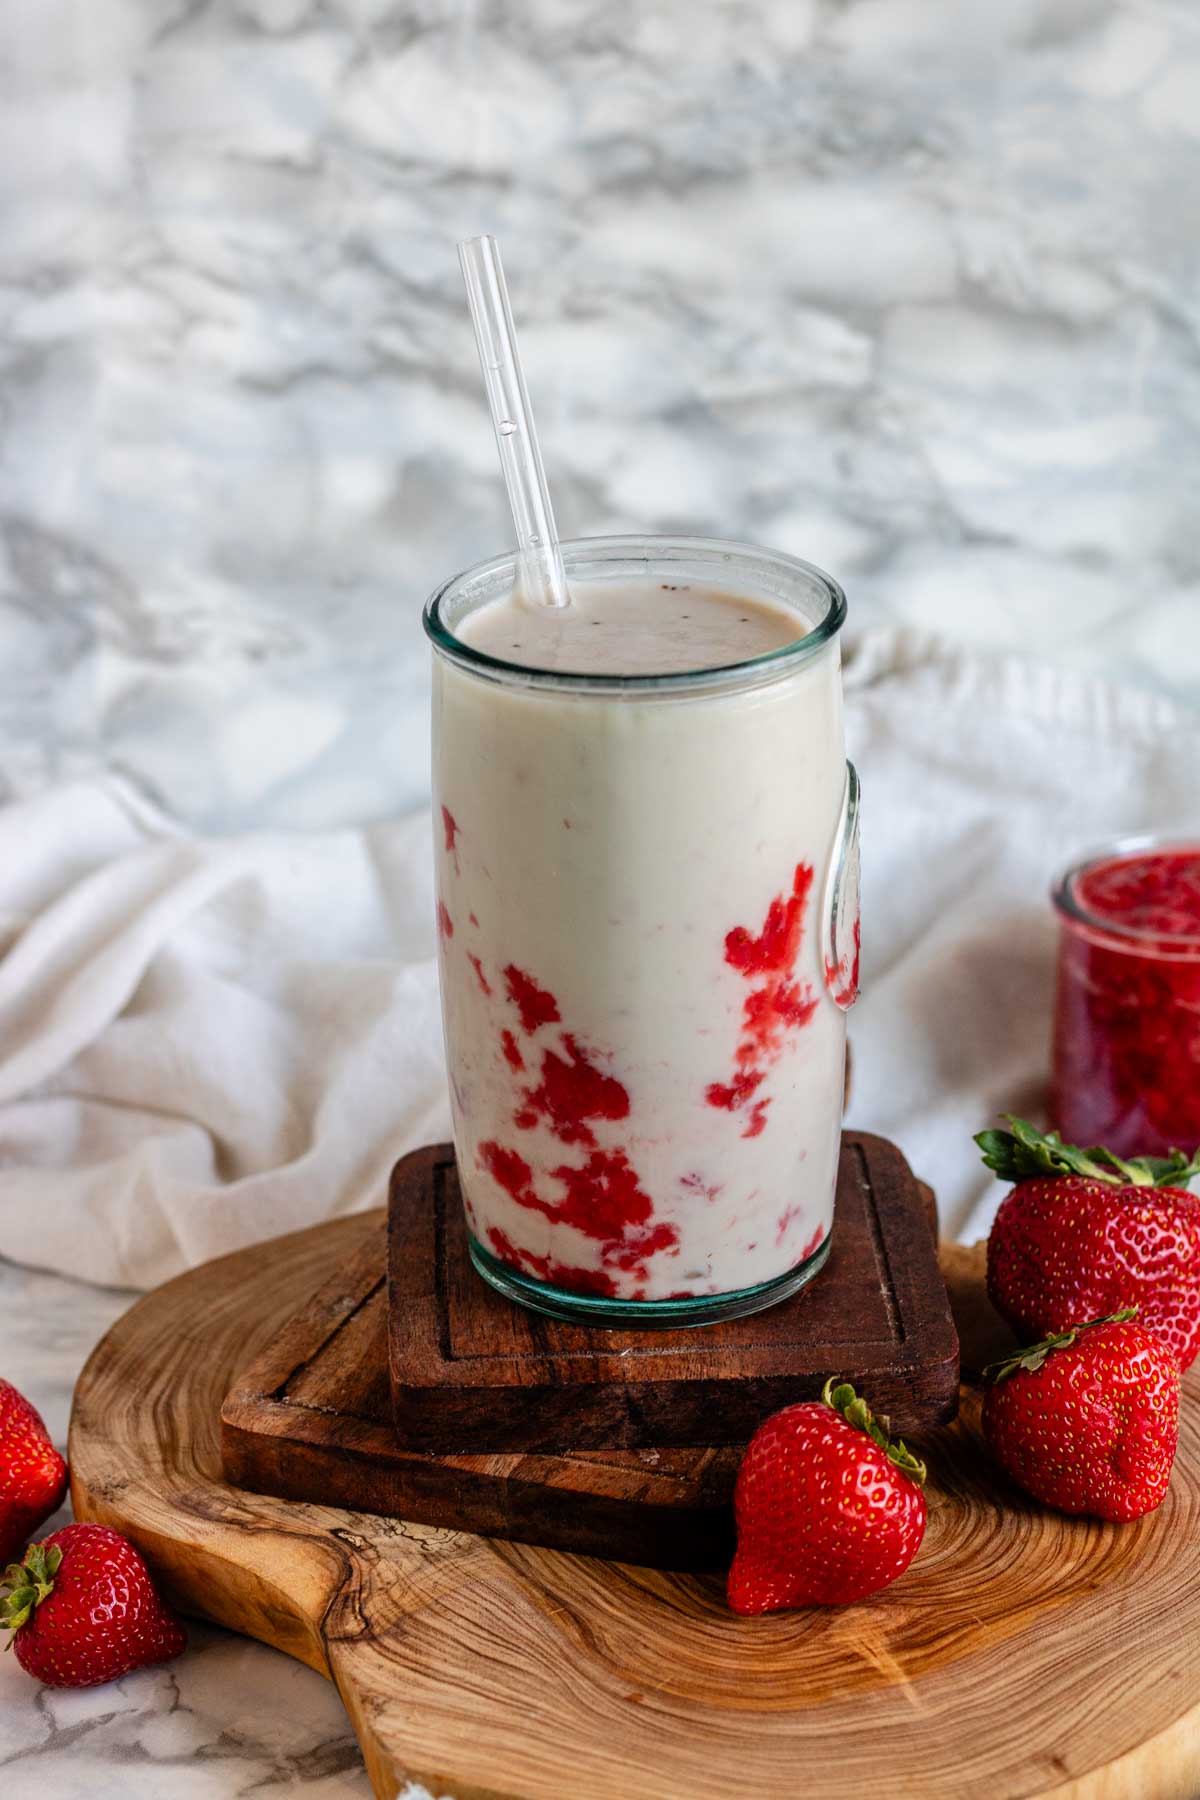 Vegan strawberry milk in a glass with straw.